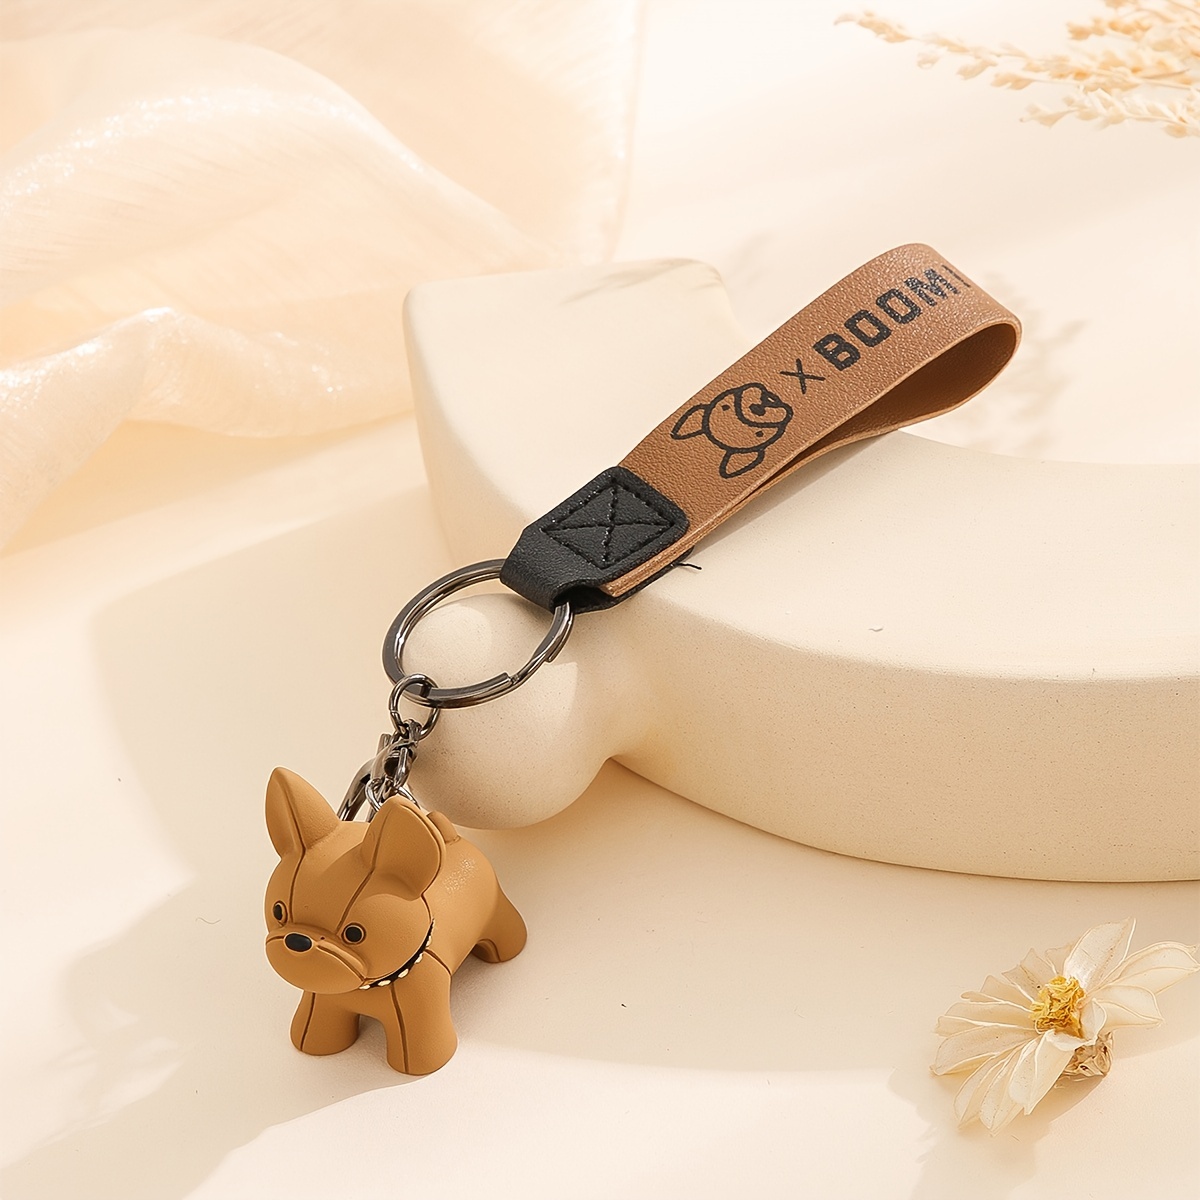 Cute Dog Puppy Keyring Charms For Women Keychain Fashion Cute